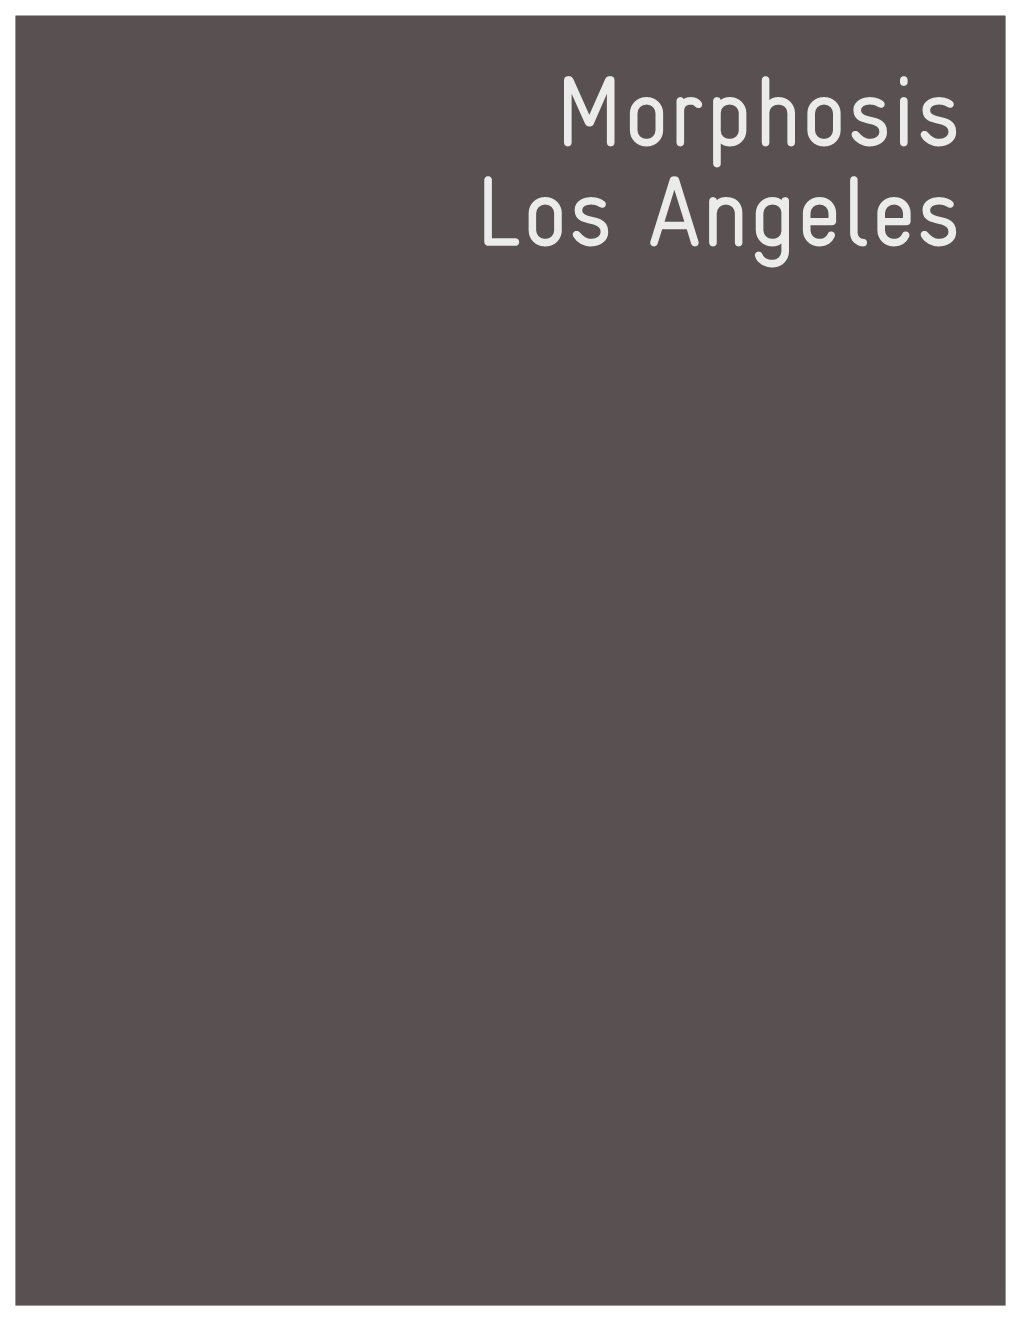 Morphosis Los Angeles